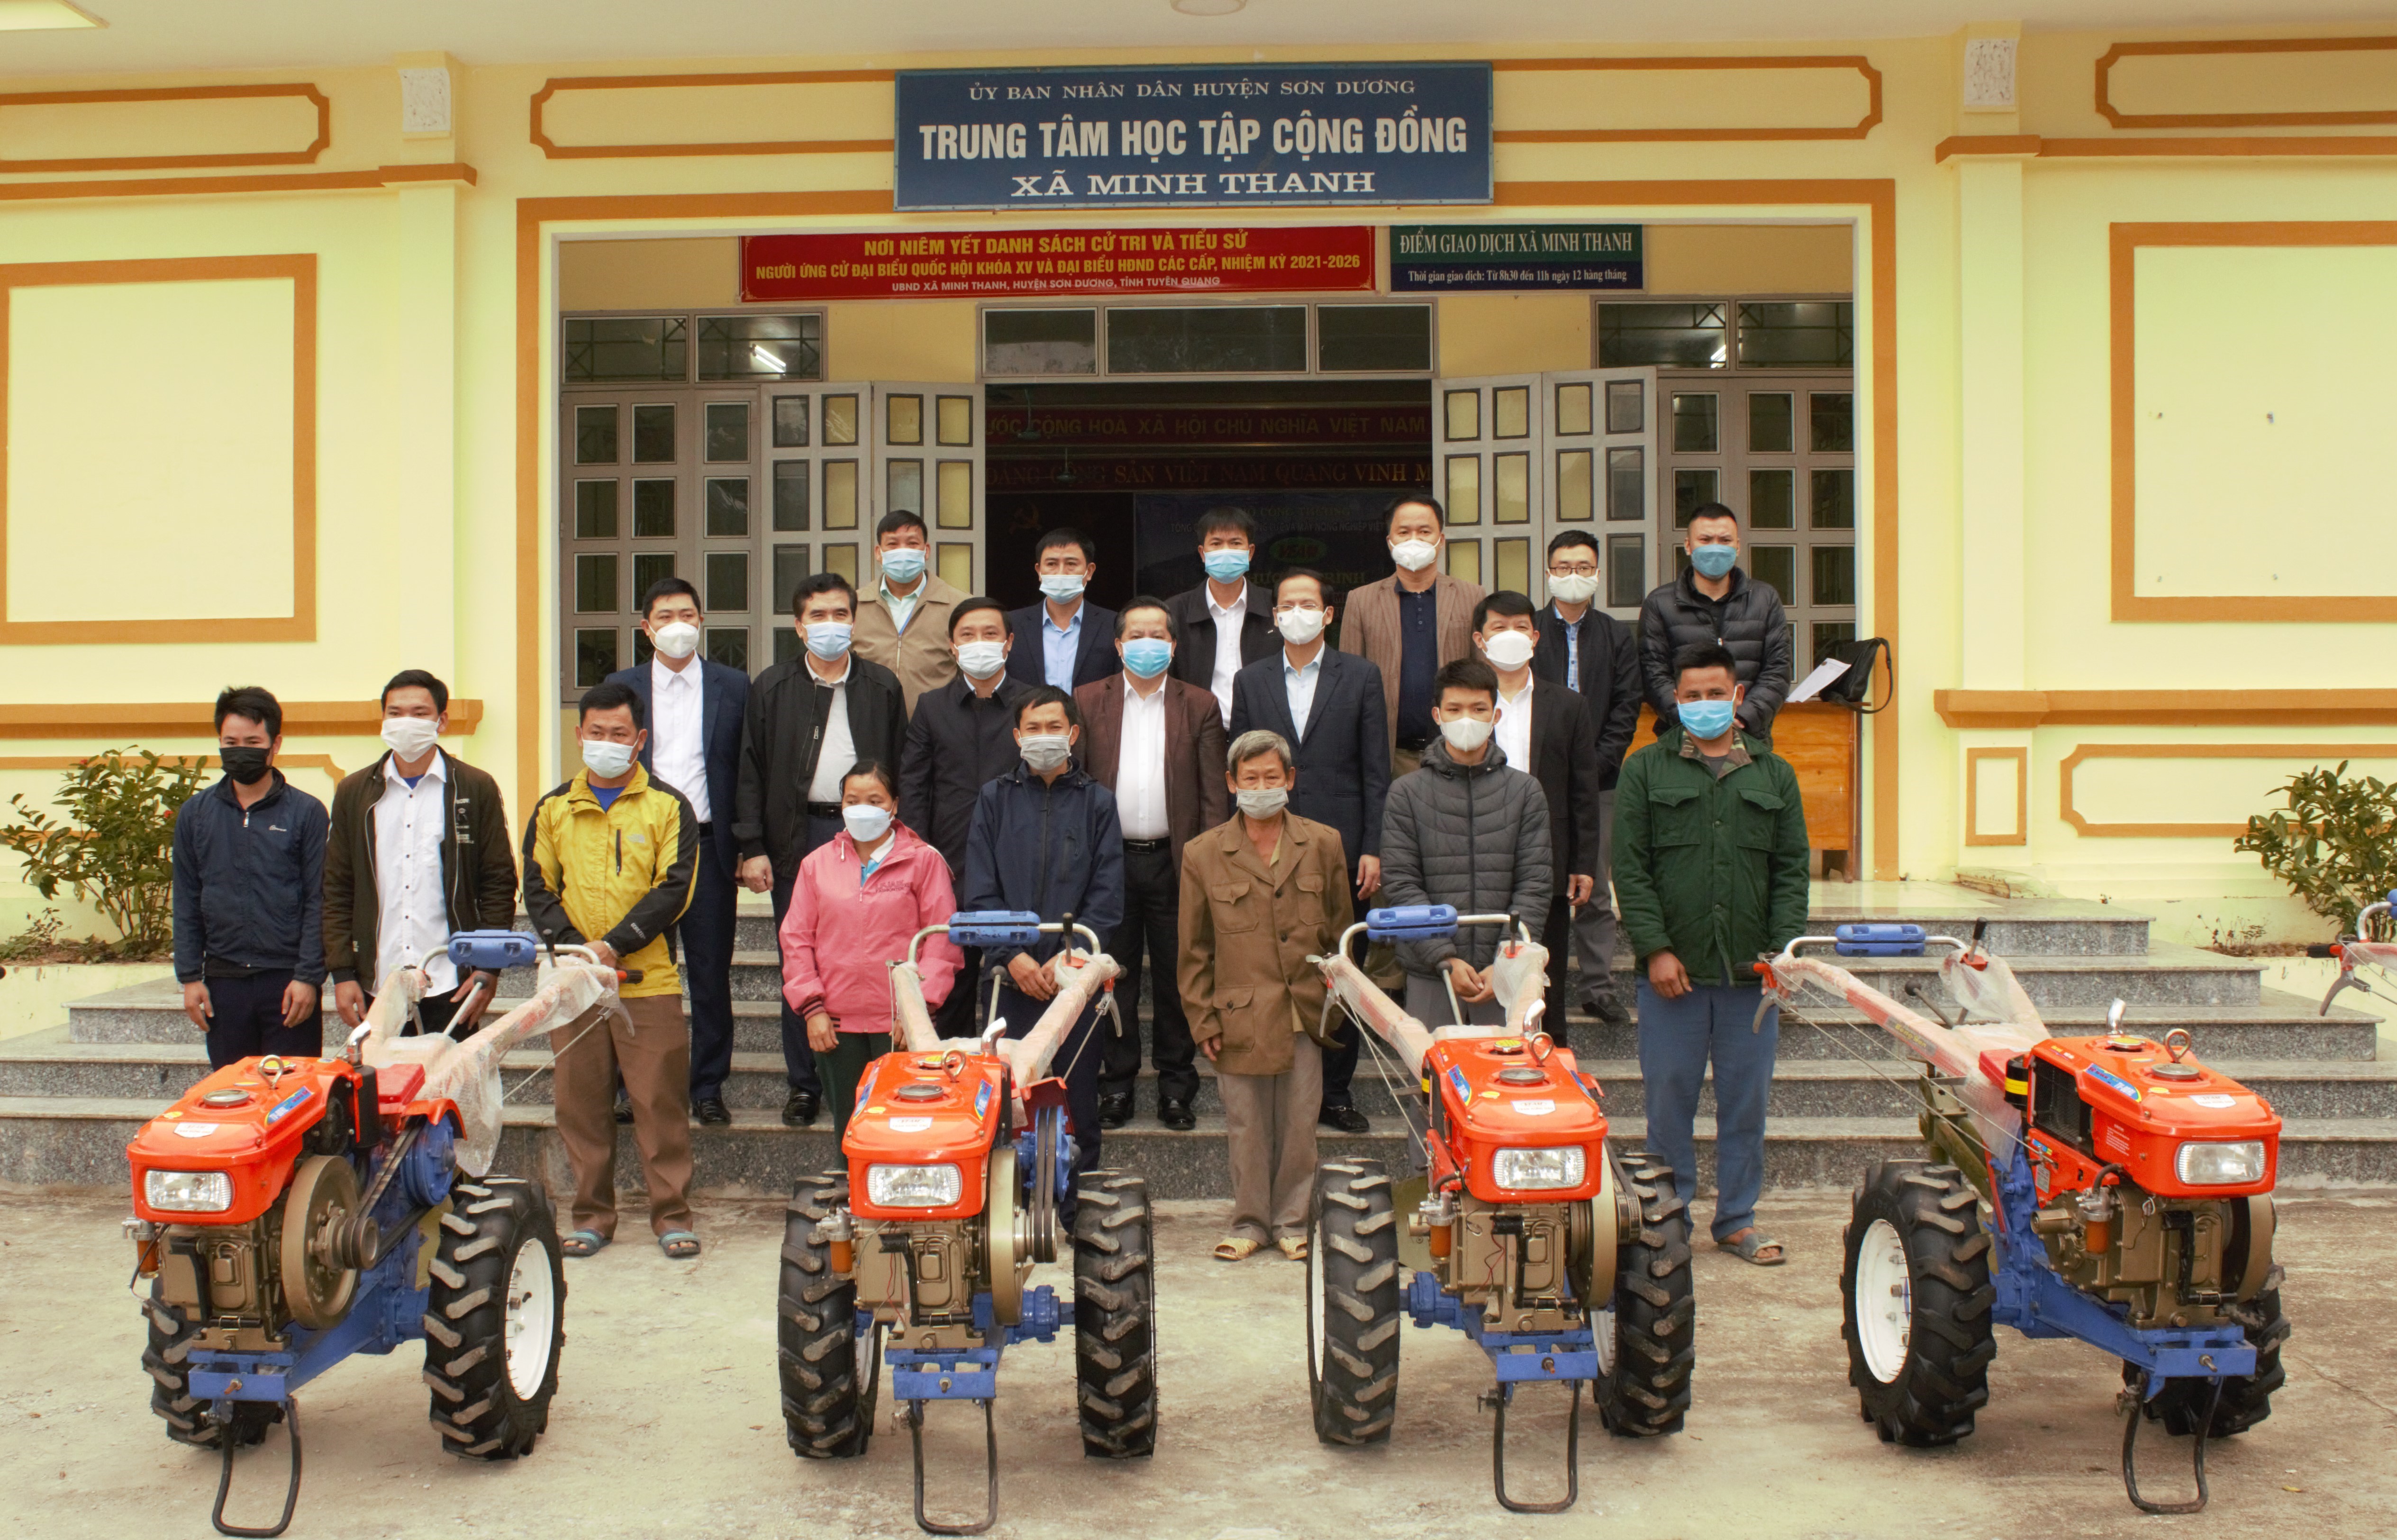 Công đoàn VEAM trao máy kéo cho bà con hộ nghèo xã Minh Thanh, huyện Sơn Dương, tỉnh Tuyên Quang